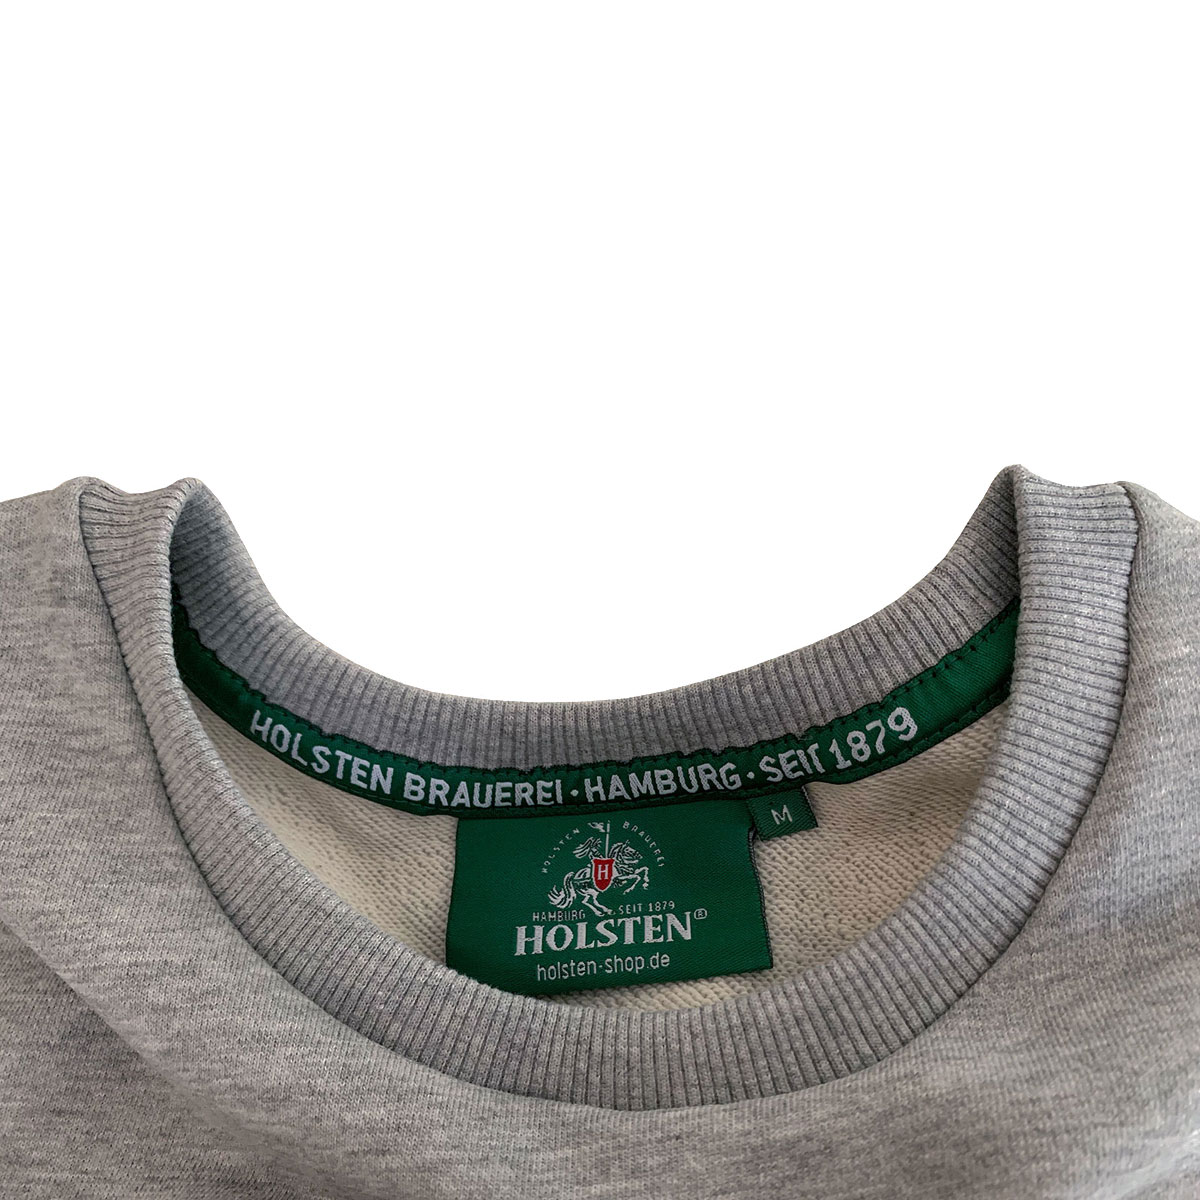 Sweatshirt, unisex, grau-meliert „Seit 1879“ (weiß)